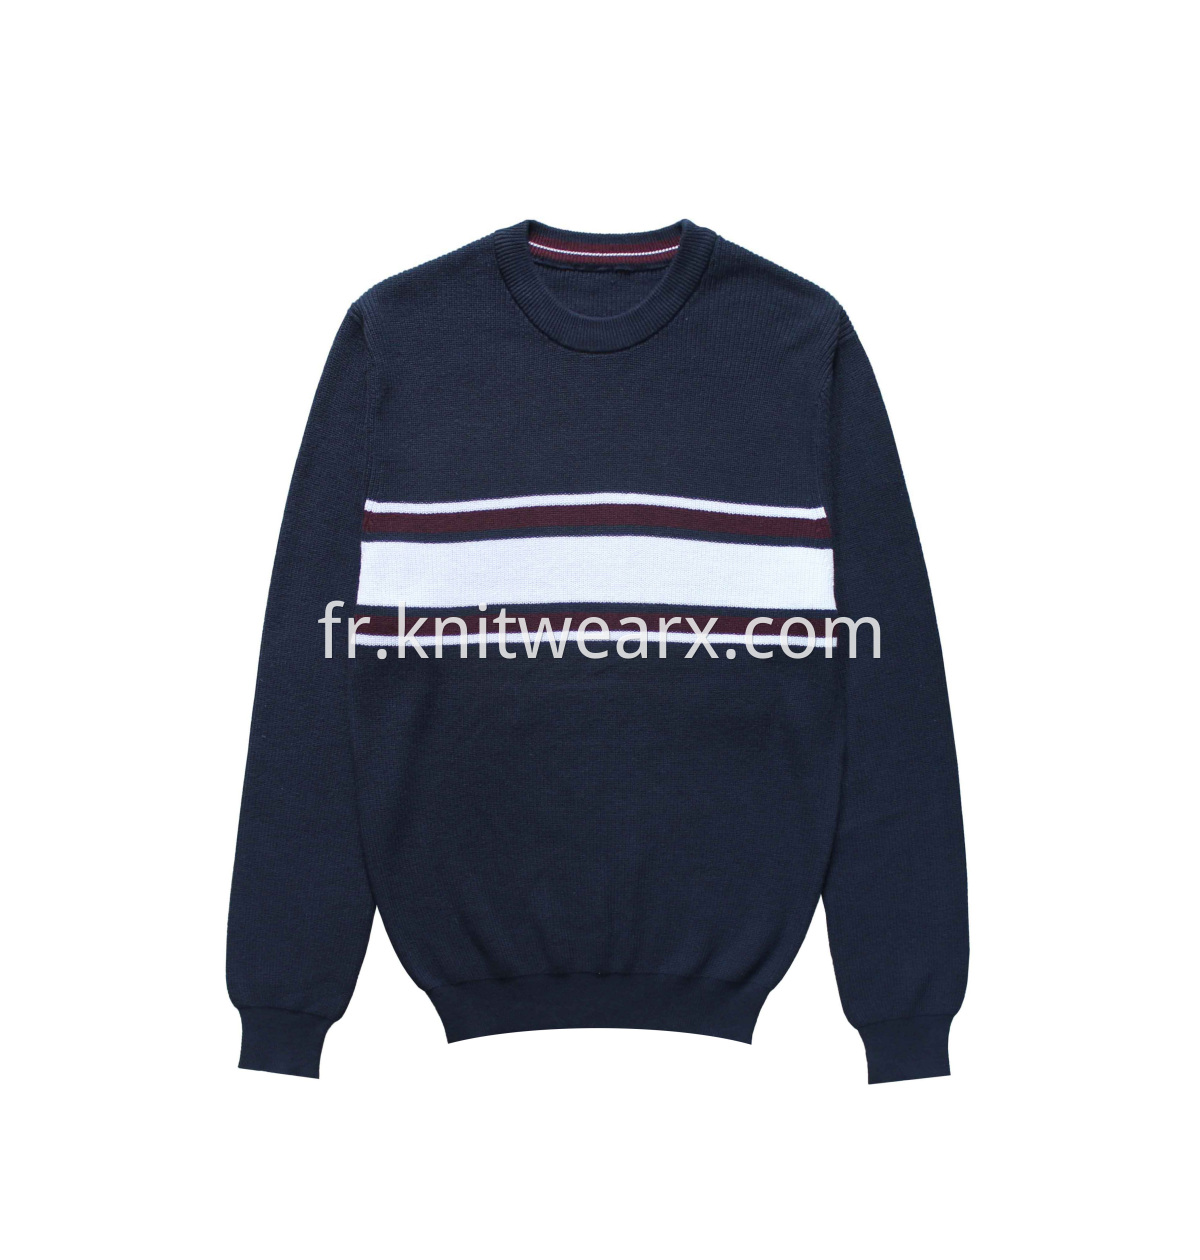 Men's Knitted Multi-Color Stripe Rib Stitch Crewneck Sweater